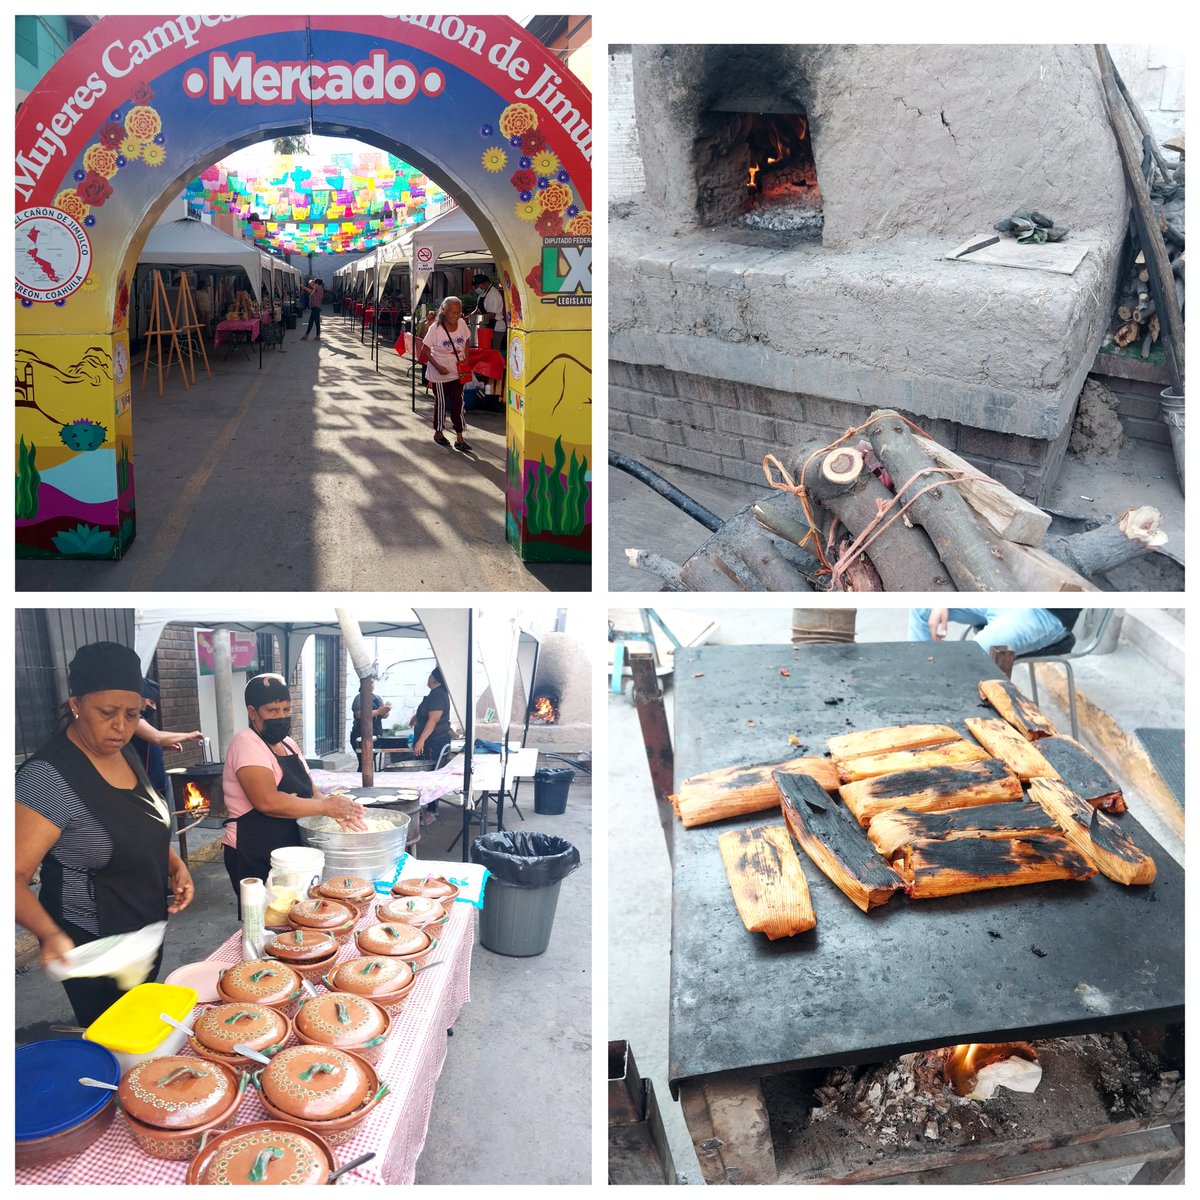 Hoy domingo ven a probar la gastronomia y artesanias de la region del #CañonDeJimulco en el paseo colon #MujeresCampesinasDelCañonDeJimulco